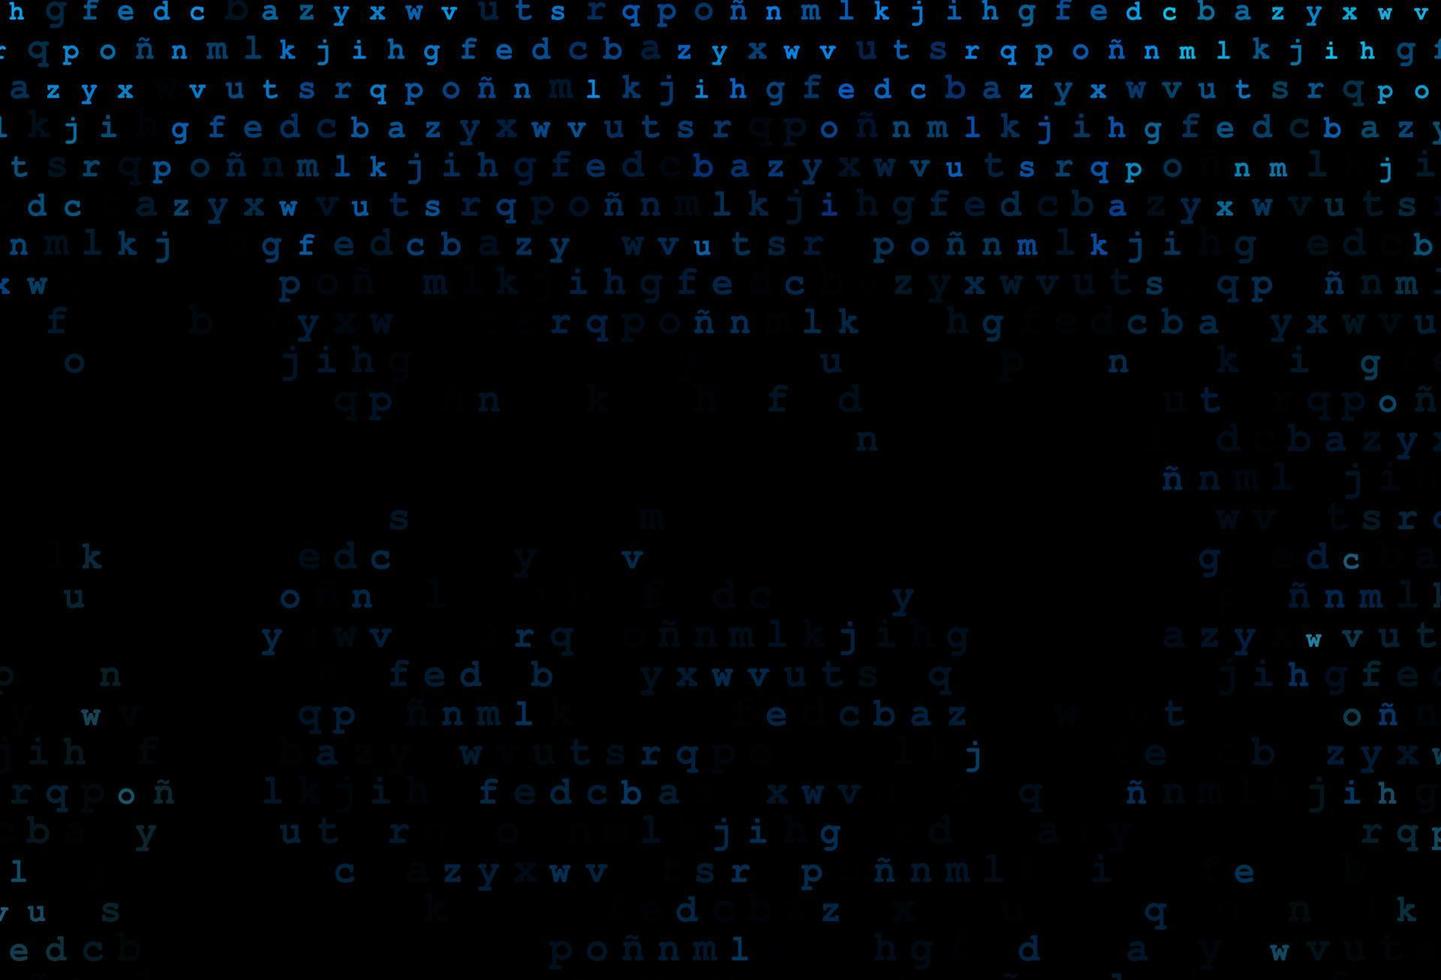 modello vettoriale blu scuro con lettere isolate.